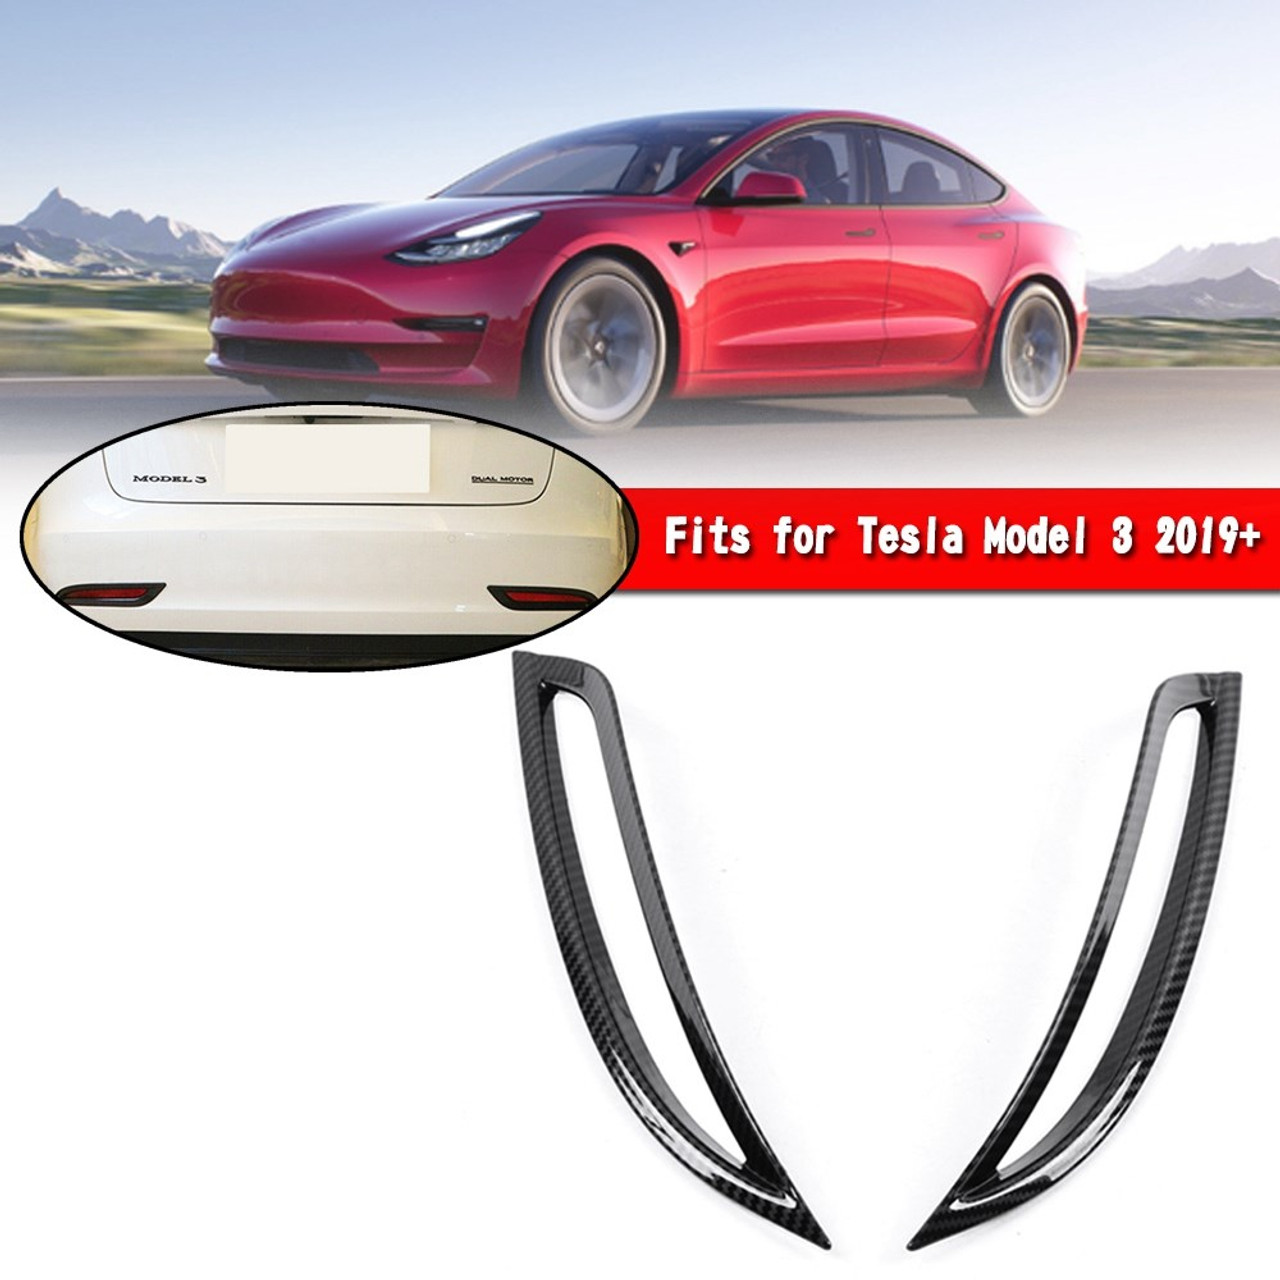 Rear Fog Light Lamp Cover Trim Fit for Tesla Model 3 2019+ Carbon Fiber